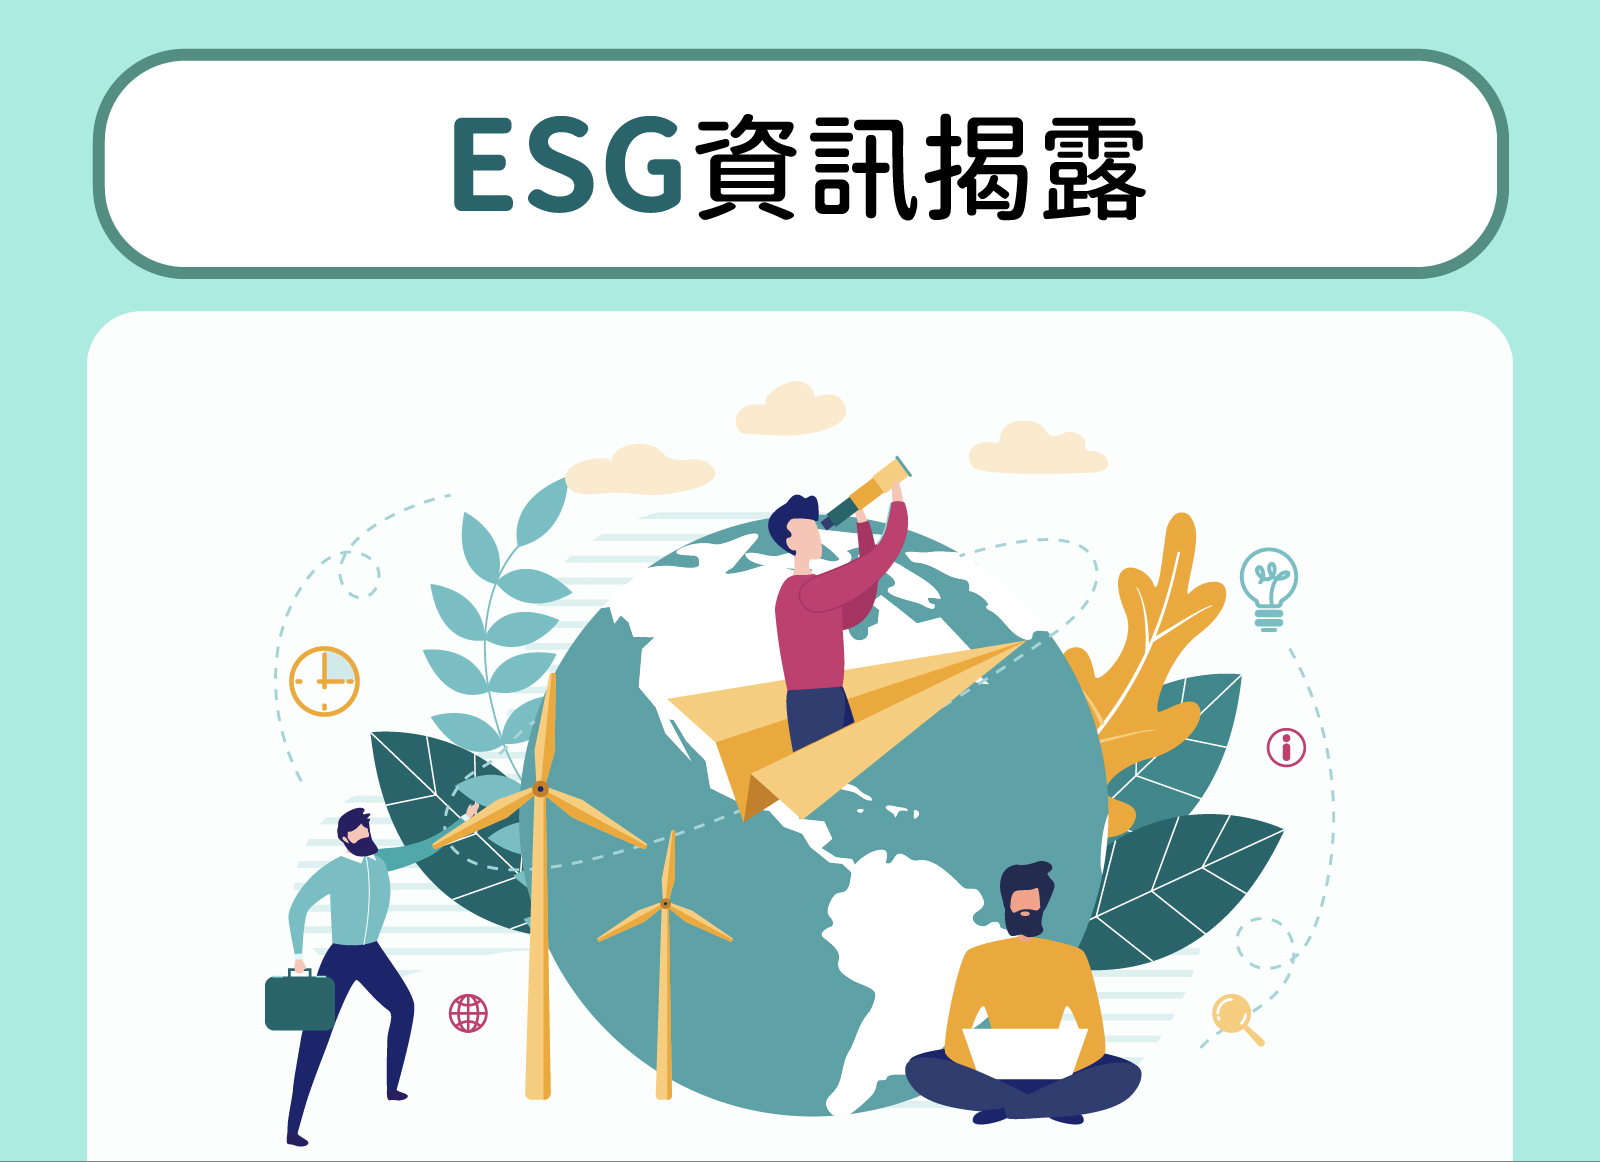 ESG InfoHub